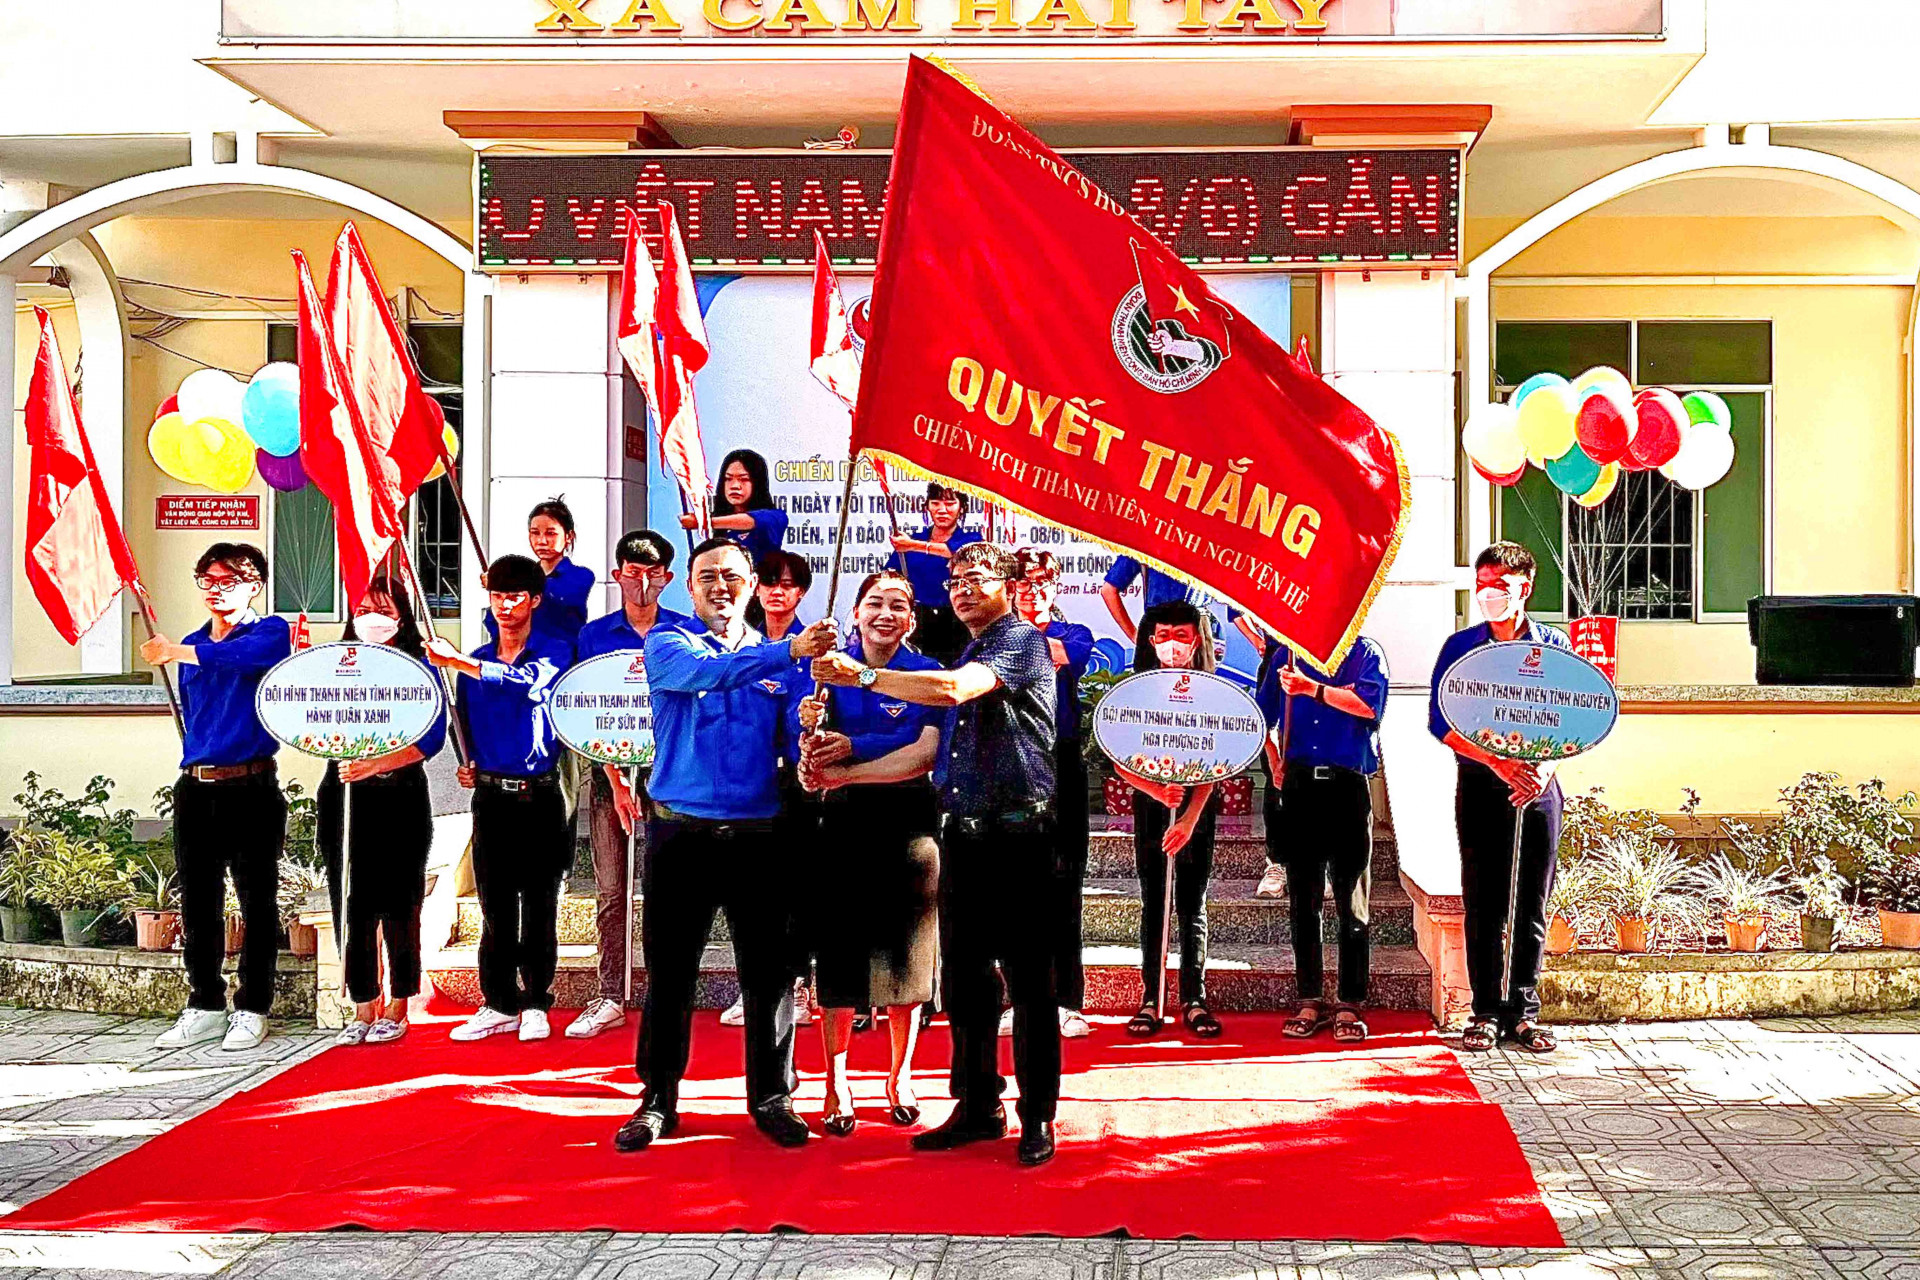 Lãnh đạo huyện Cam Lâm trao cờ quyết thắng thực hiện các công trình, phần việc trong Chiến dịch Thanh niên tình nguyện hè cho Huyện đoàn Cam Lâm 